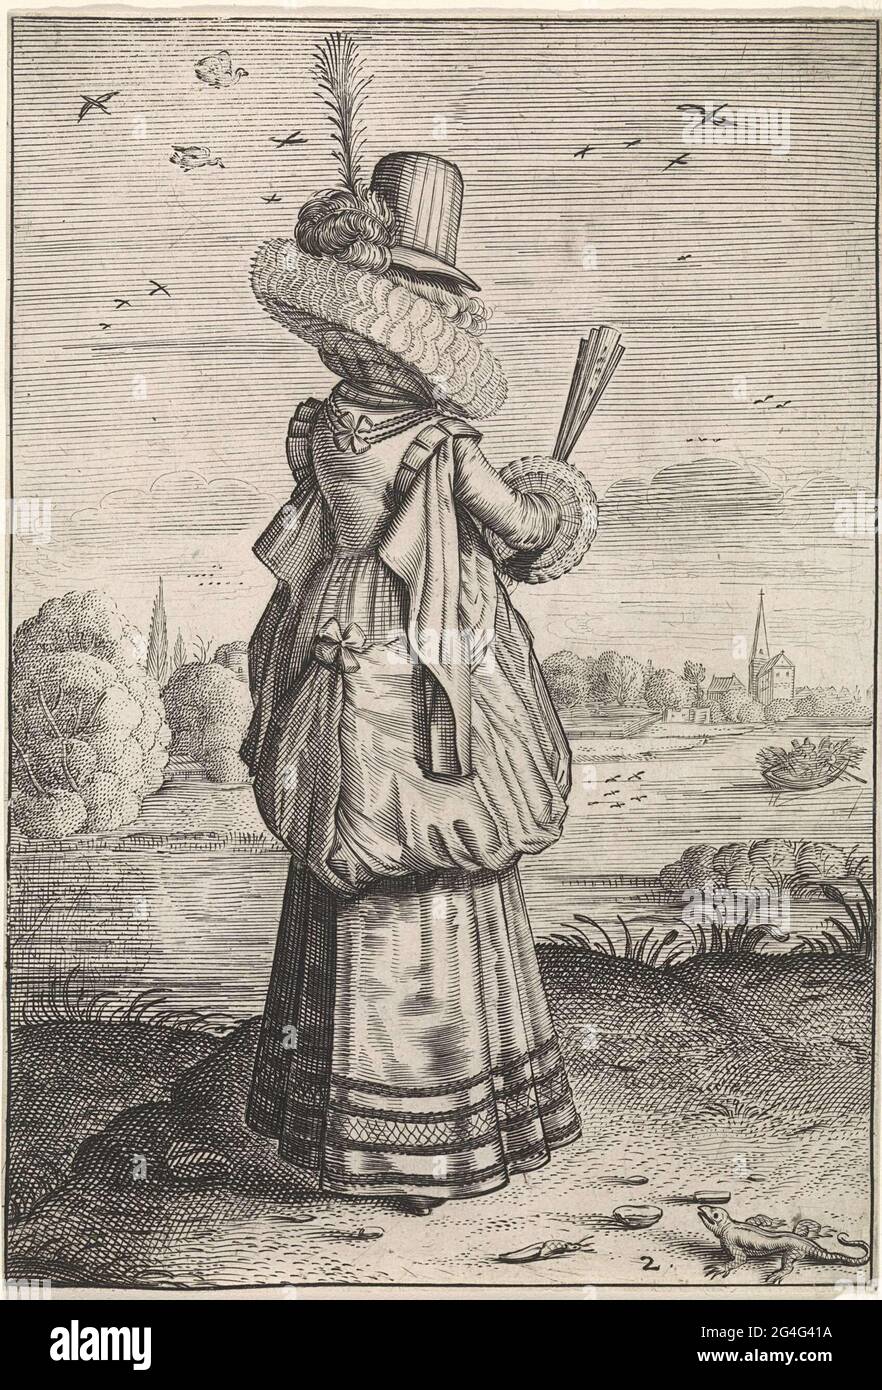 Cette série met en évidence le contraste entre les vêtements de noblewomen  néerlandais et ceux des femmes des provinces. Les vêtements régionaux  évoluent lentement au fil du temps, tandis que la